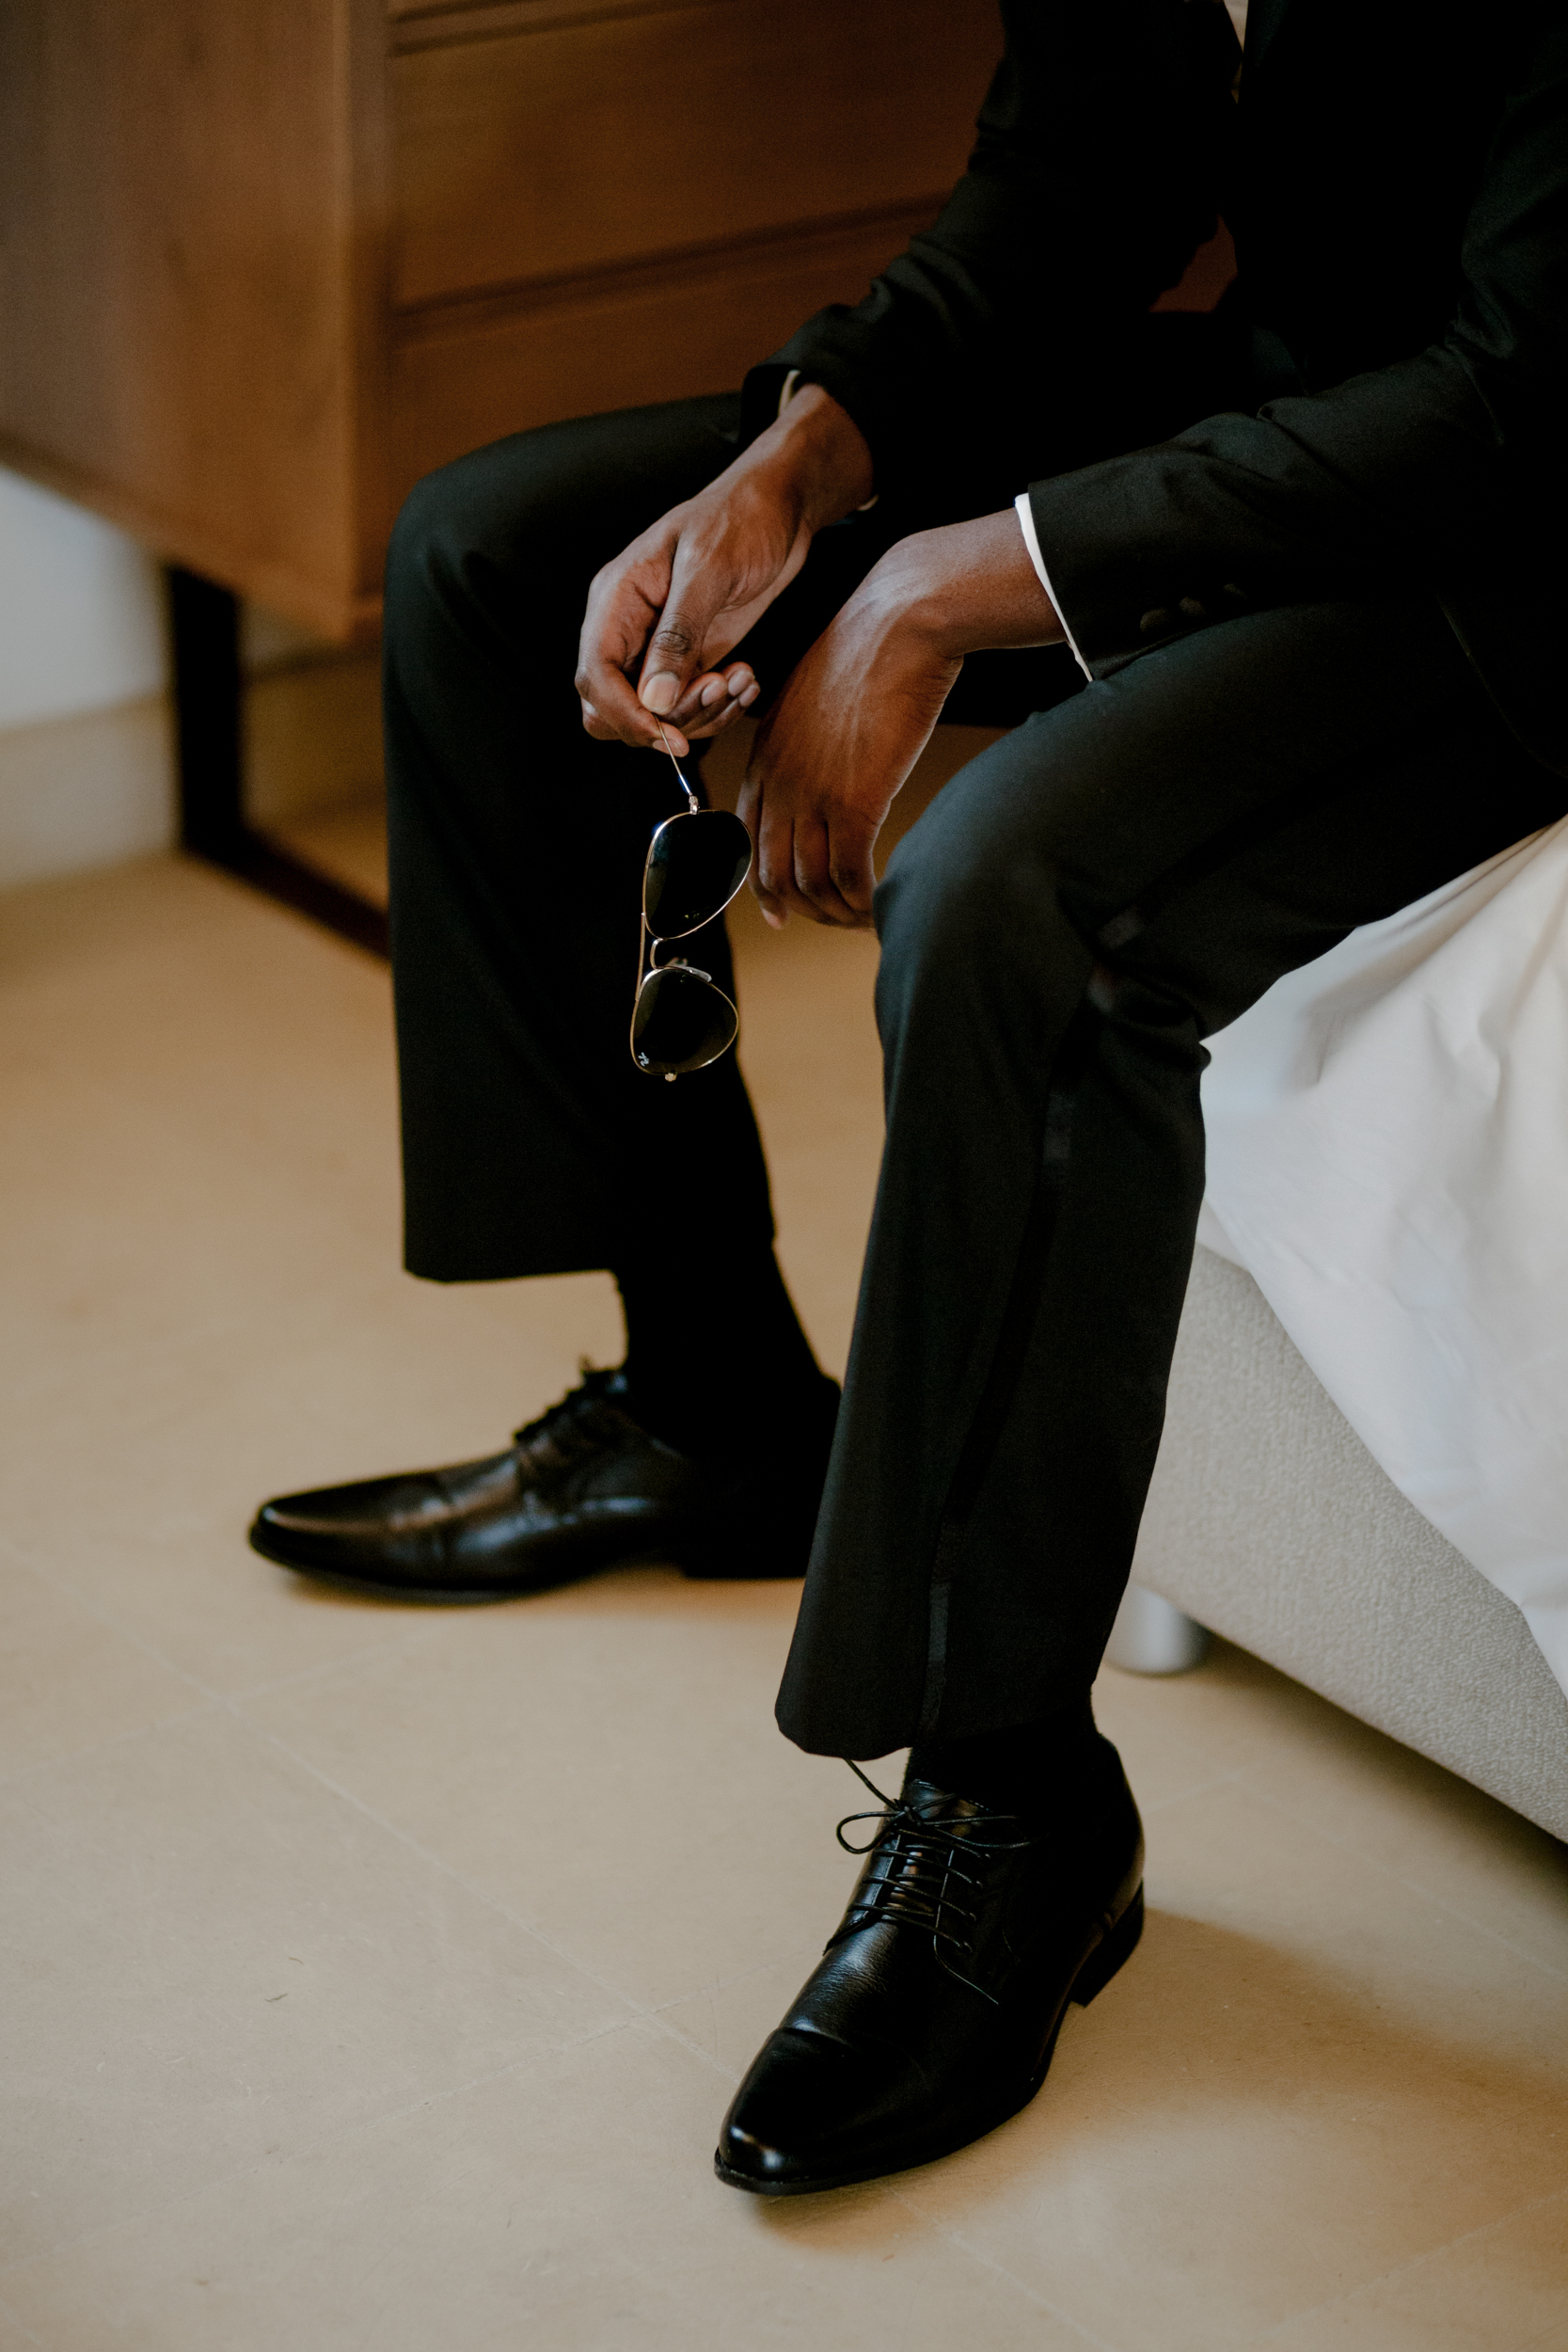 groom-shiny-shoes-tuxedo.jpg